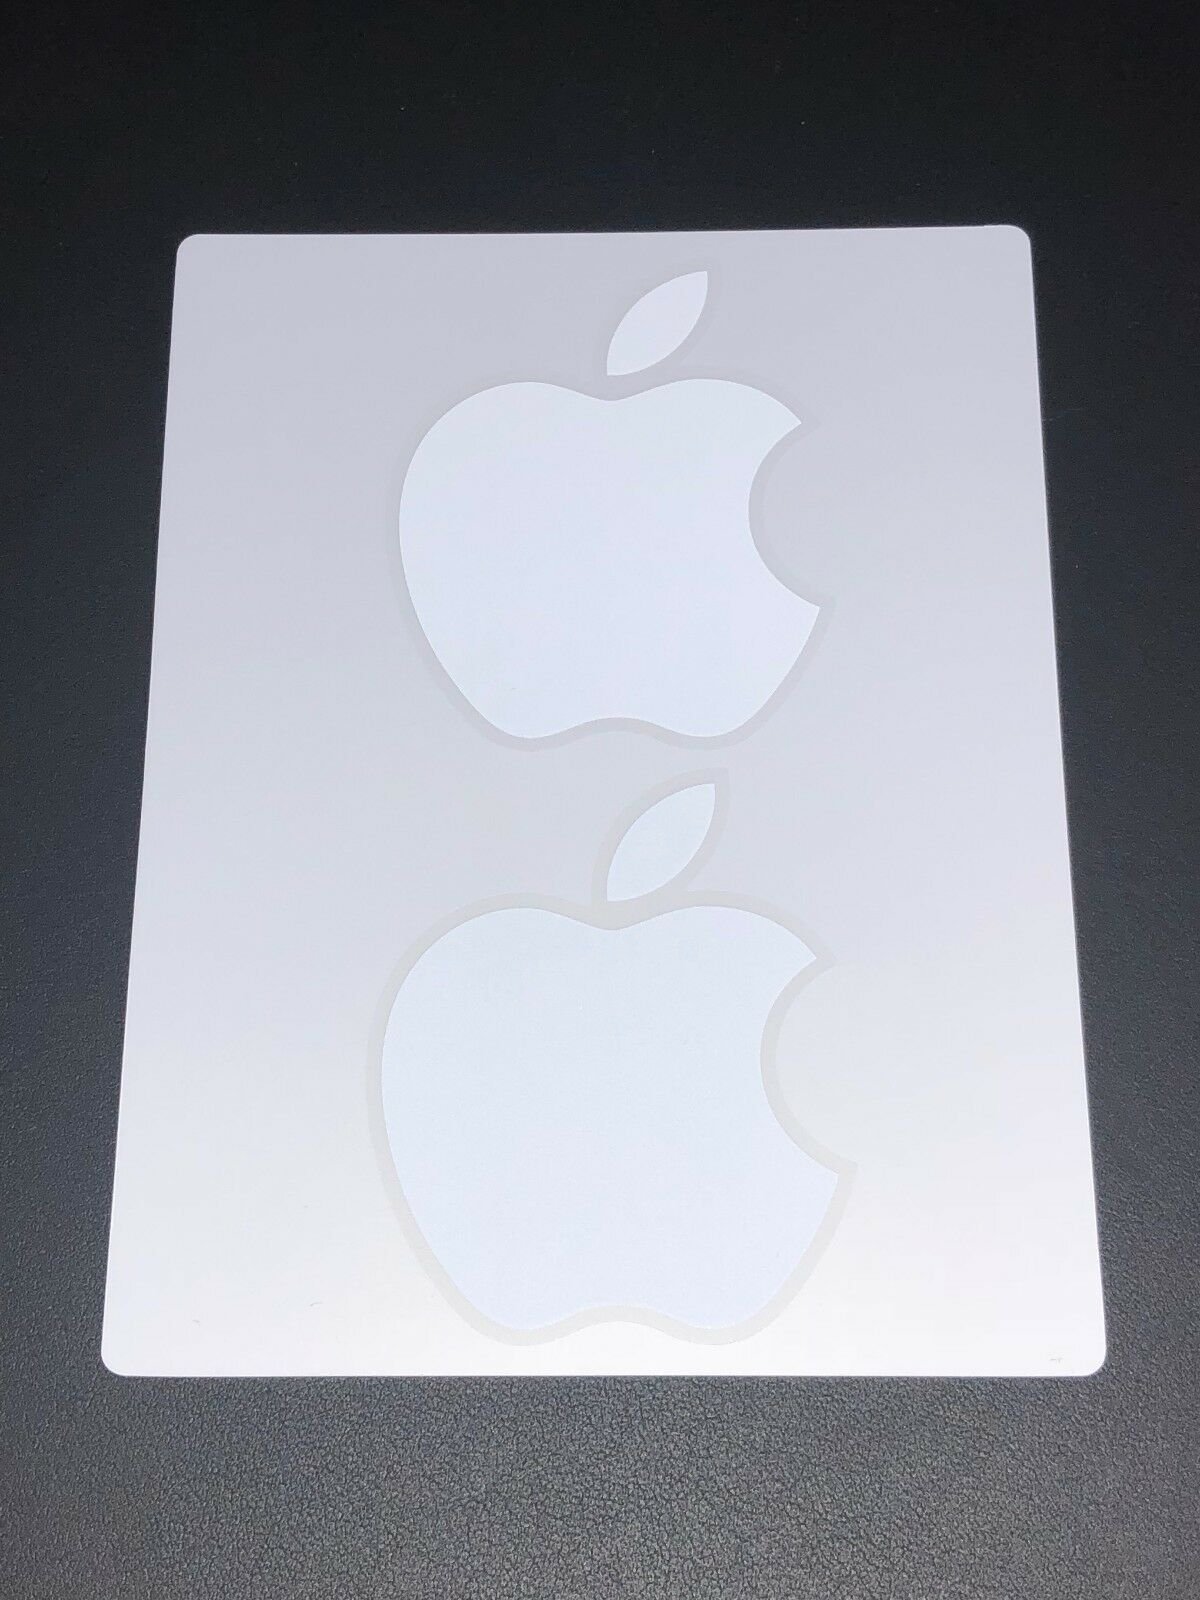 Купить стикеры на айфон. Наклейка Apple. Наклейка Apple iphone. Наклейка айфон яблоко. Наклейки на айфон.